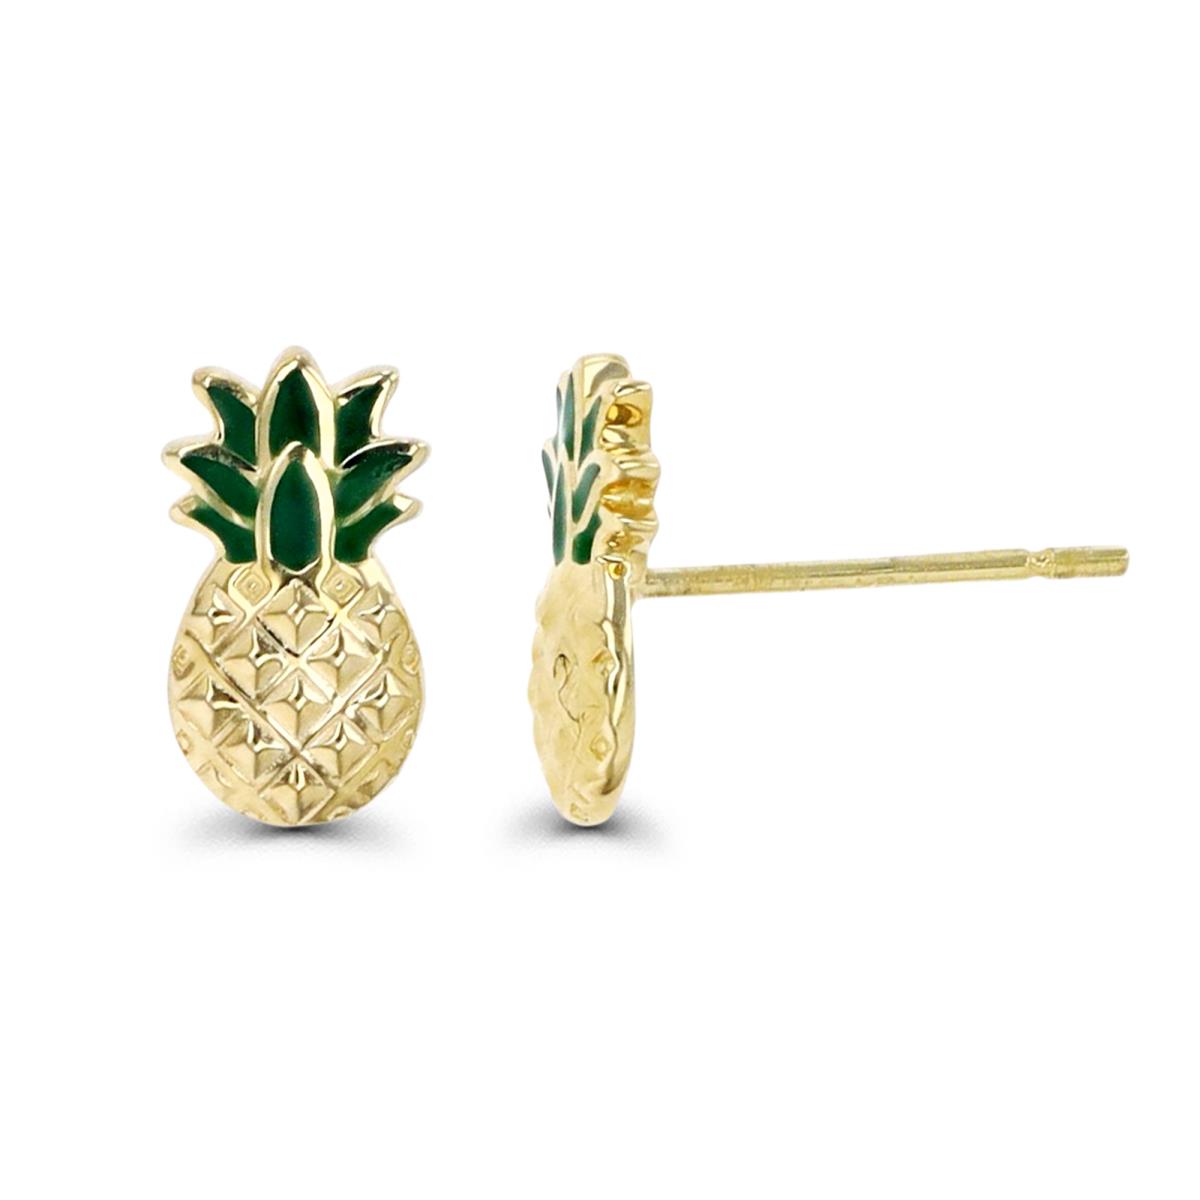 10K Gold Yellow & Enamel 8MM Pineapple Stud Earring